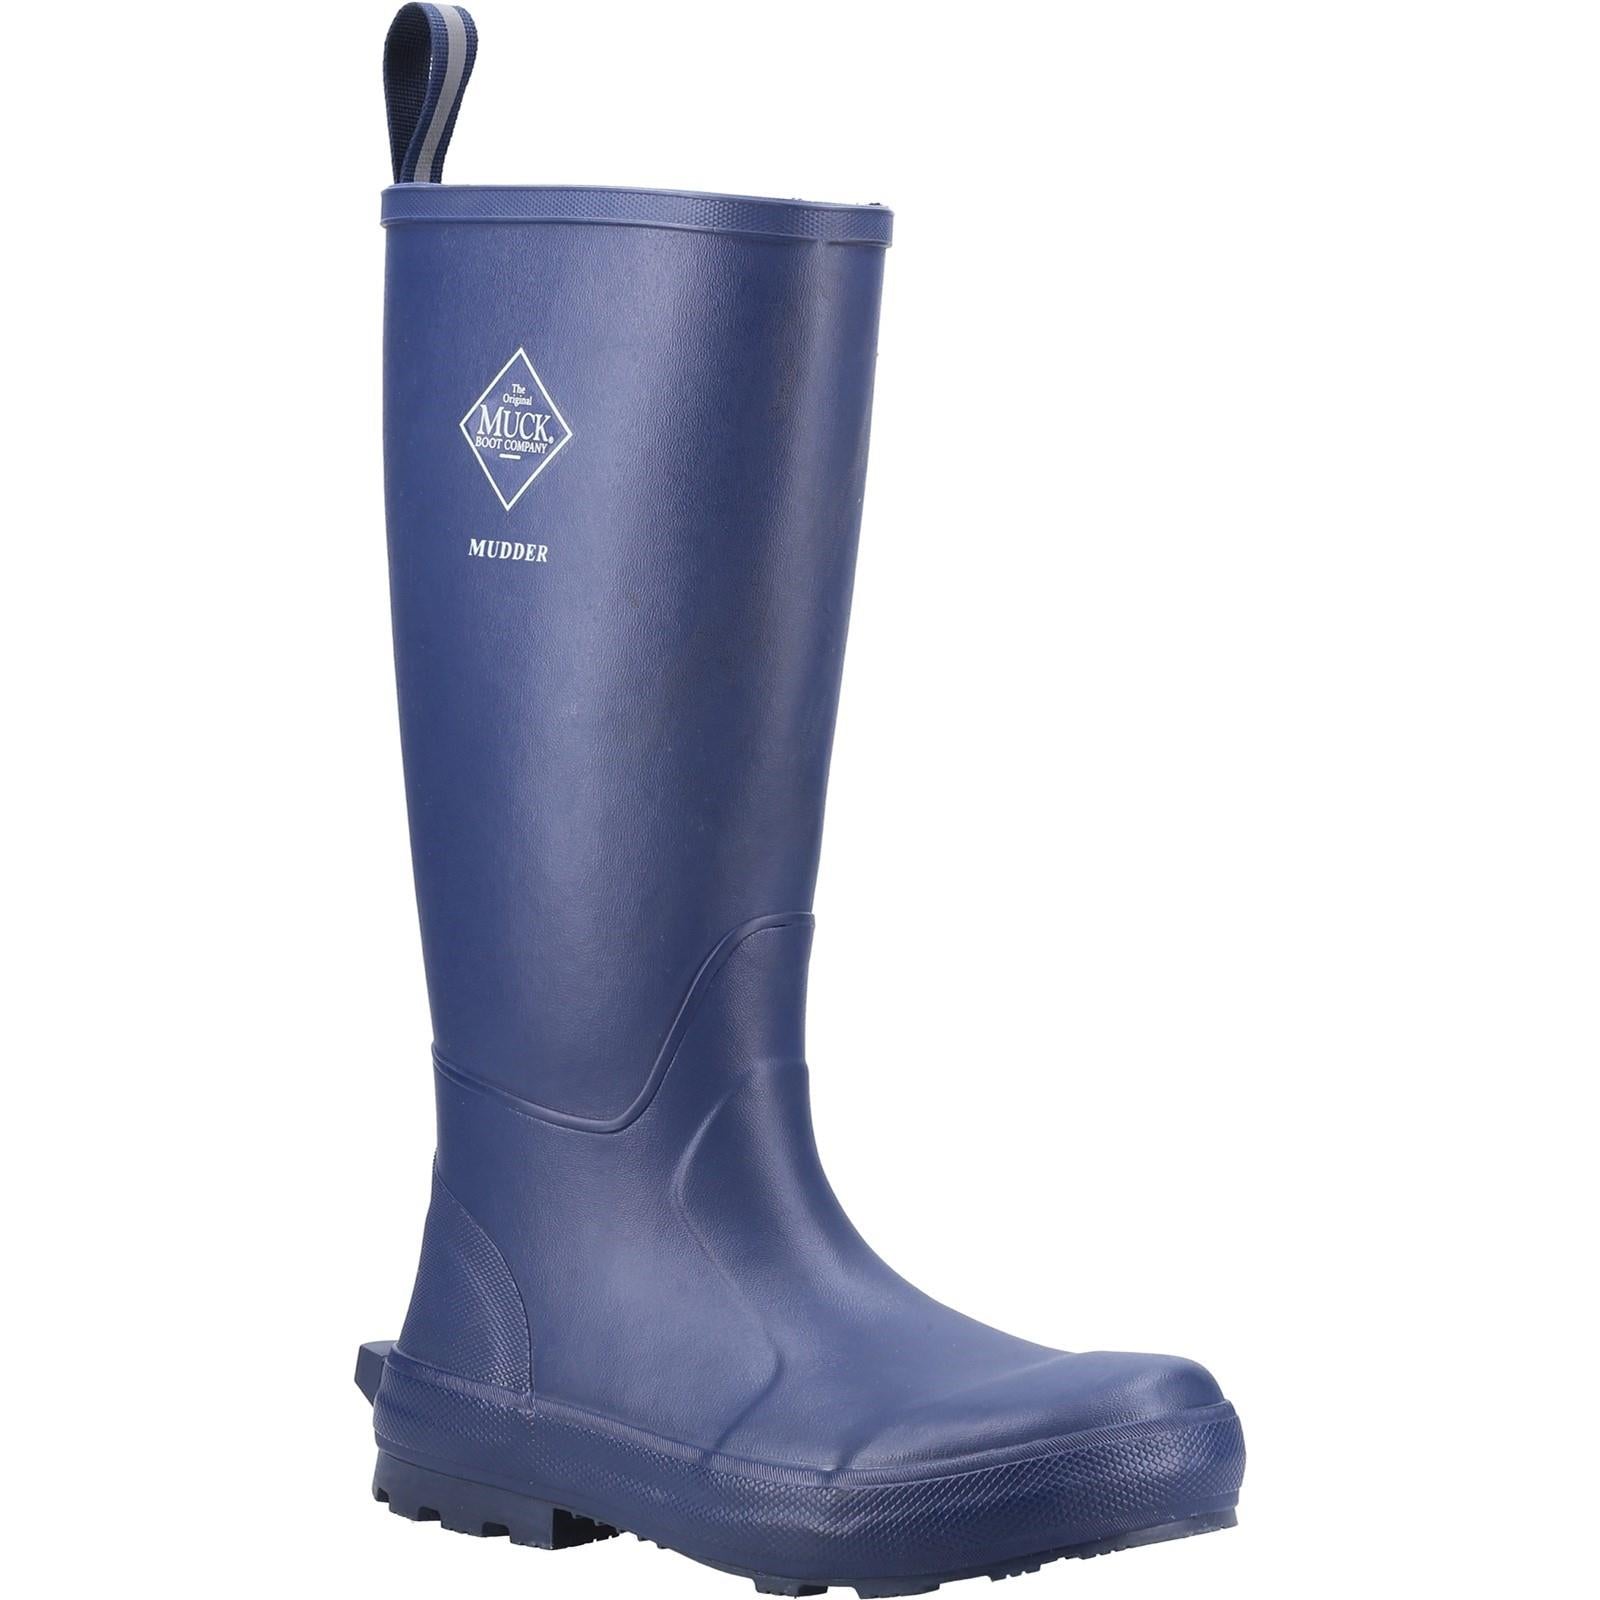 Muck Boots Mudder Tall navy blue memory foam waterproof wellington boots